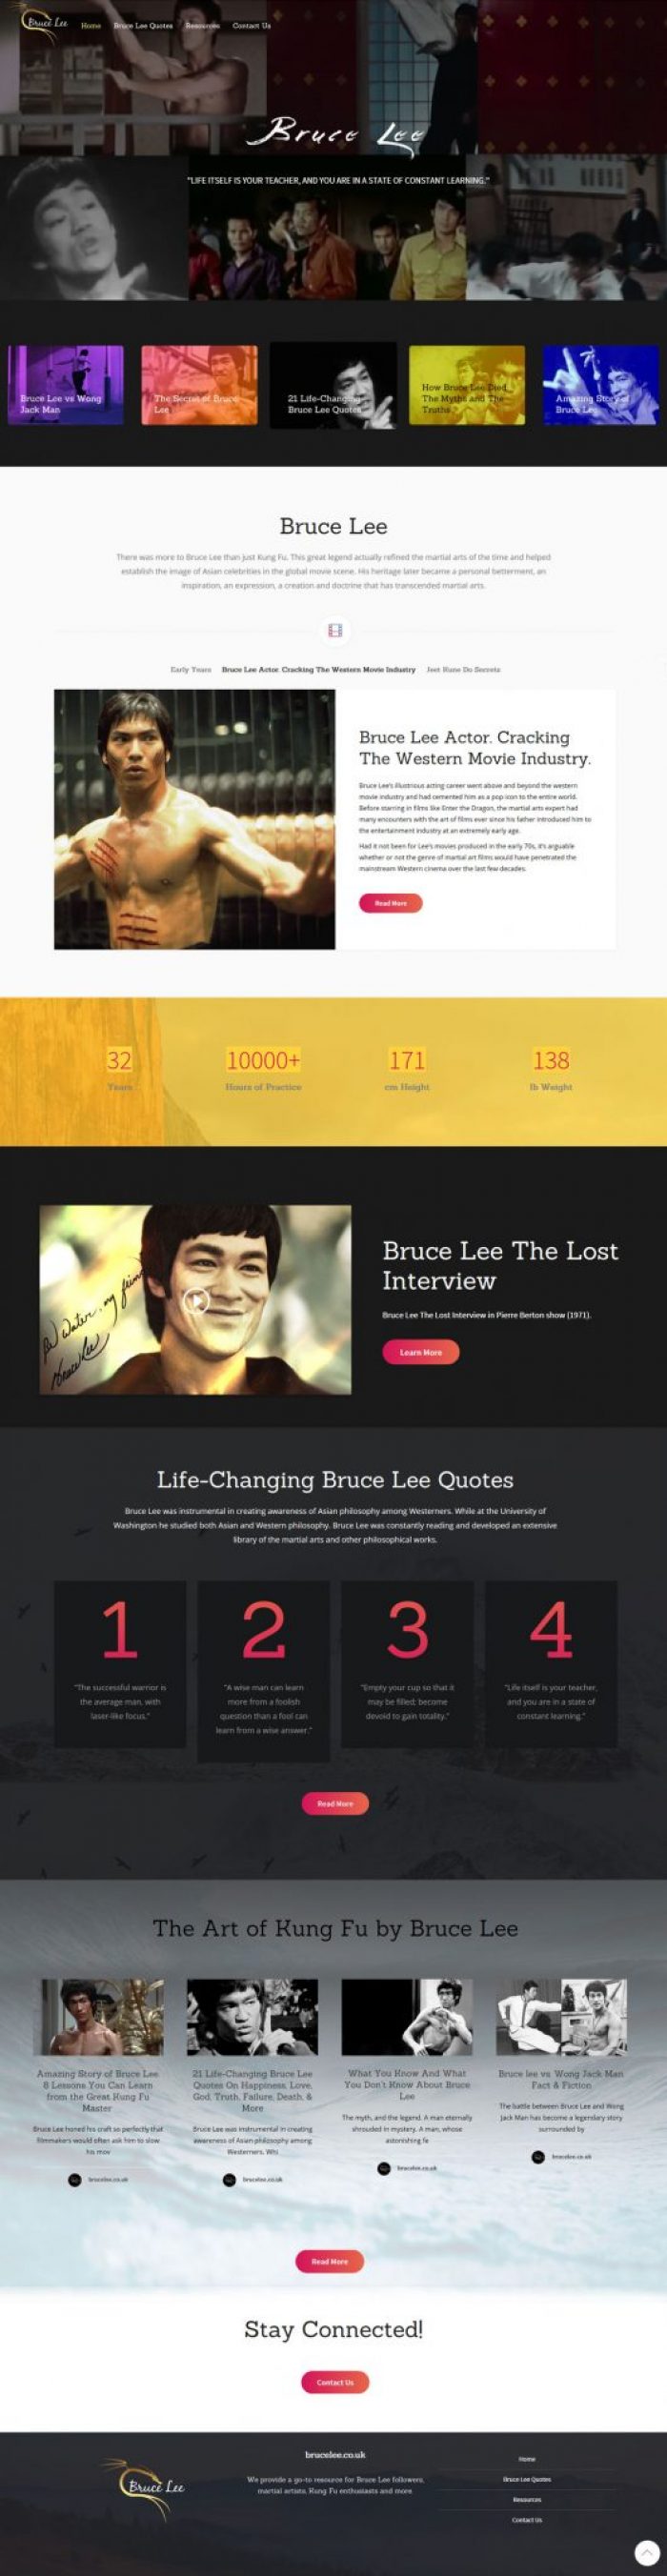 Bruce Lee website design